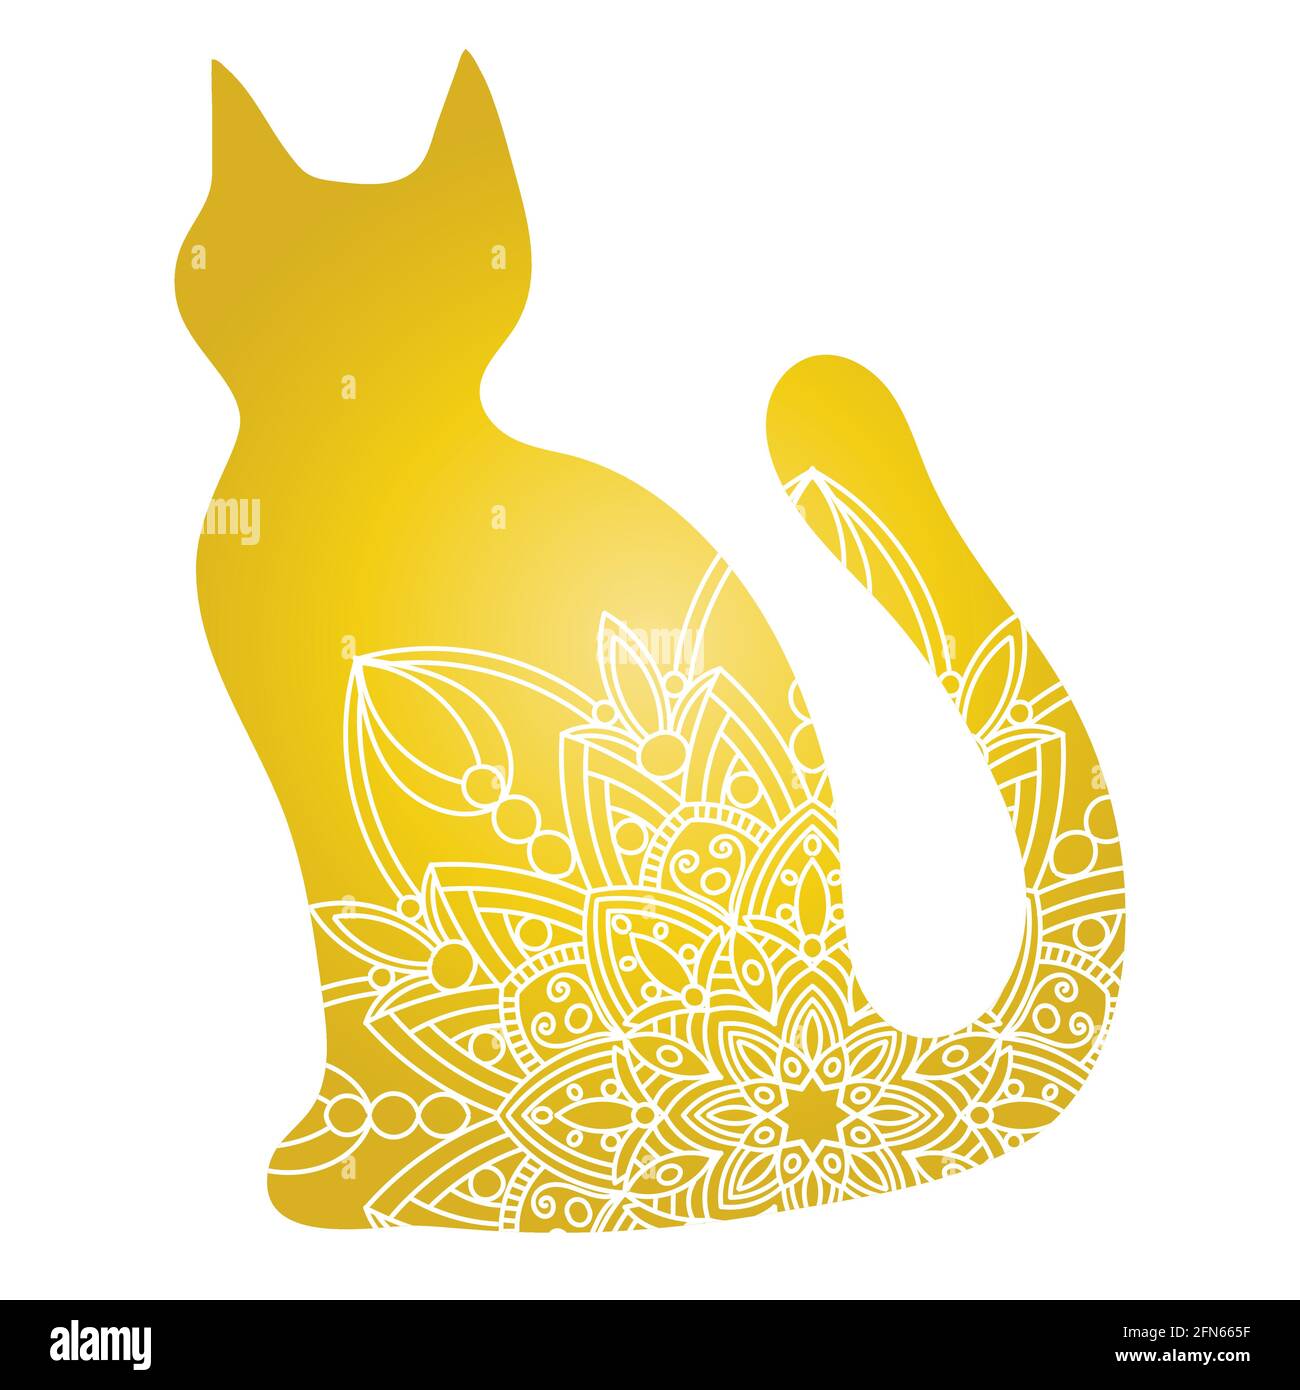 Doodle Katze Mandala in Gold und weiß für Seite Erwachsene Malbücher, Tier-Vektor-Muster. Anti-Stress-Design. Stock Vektor